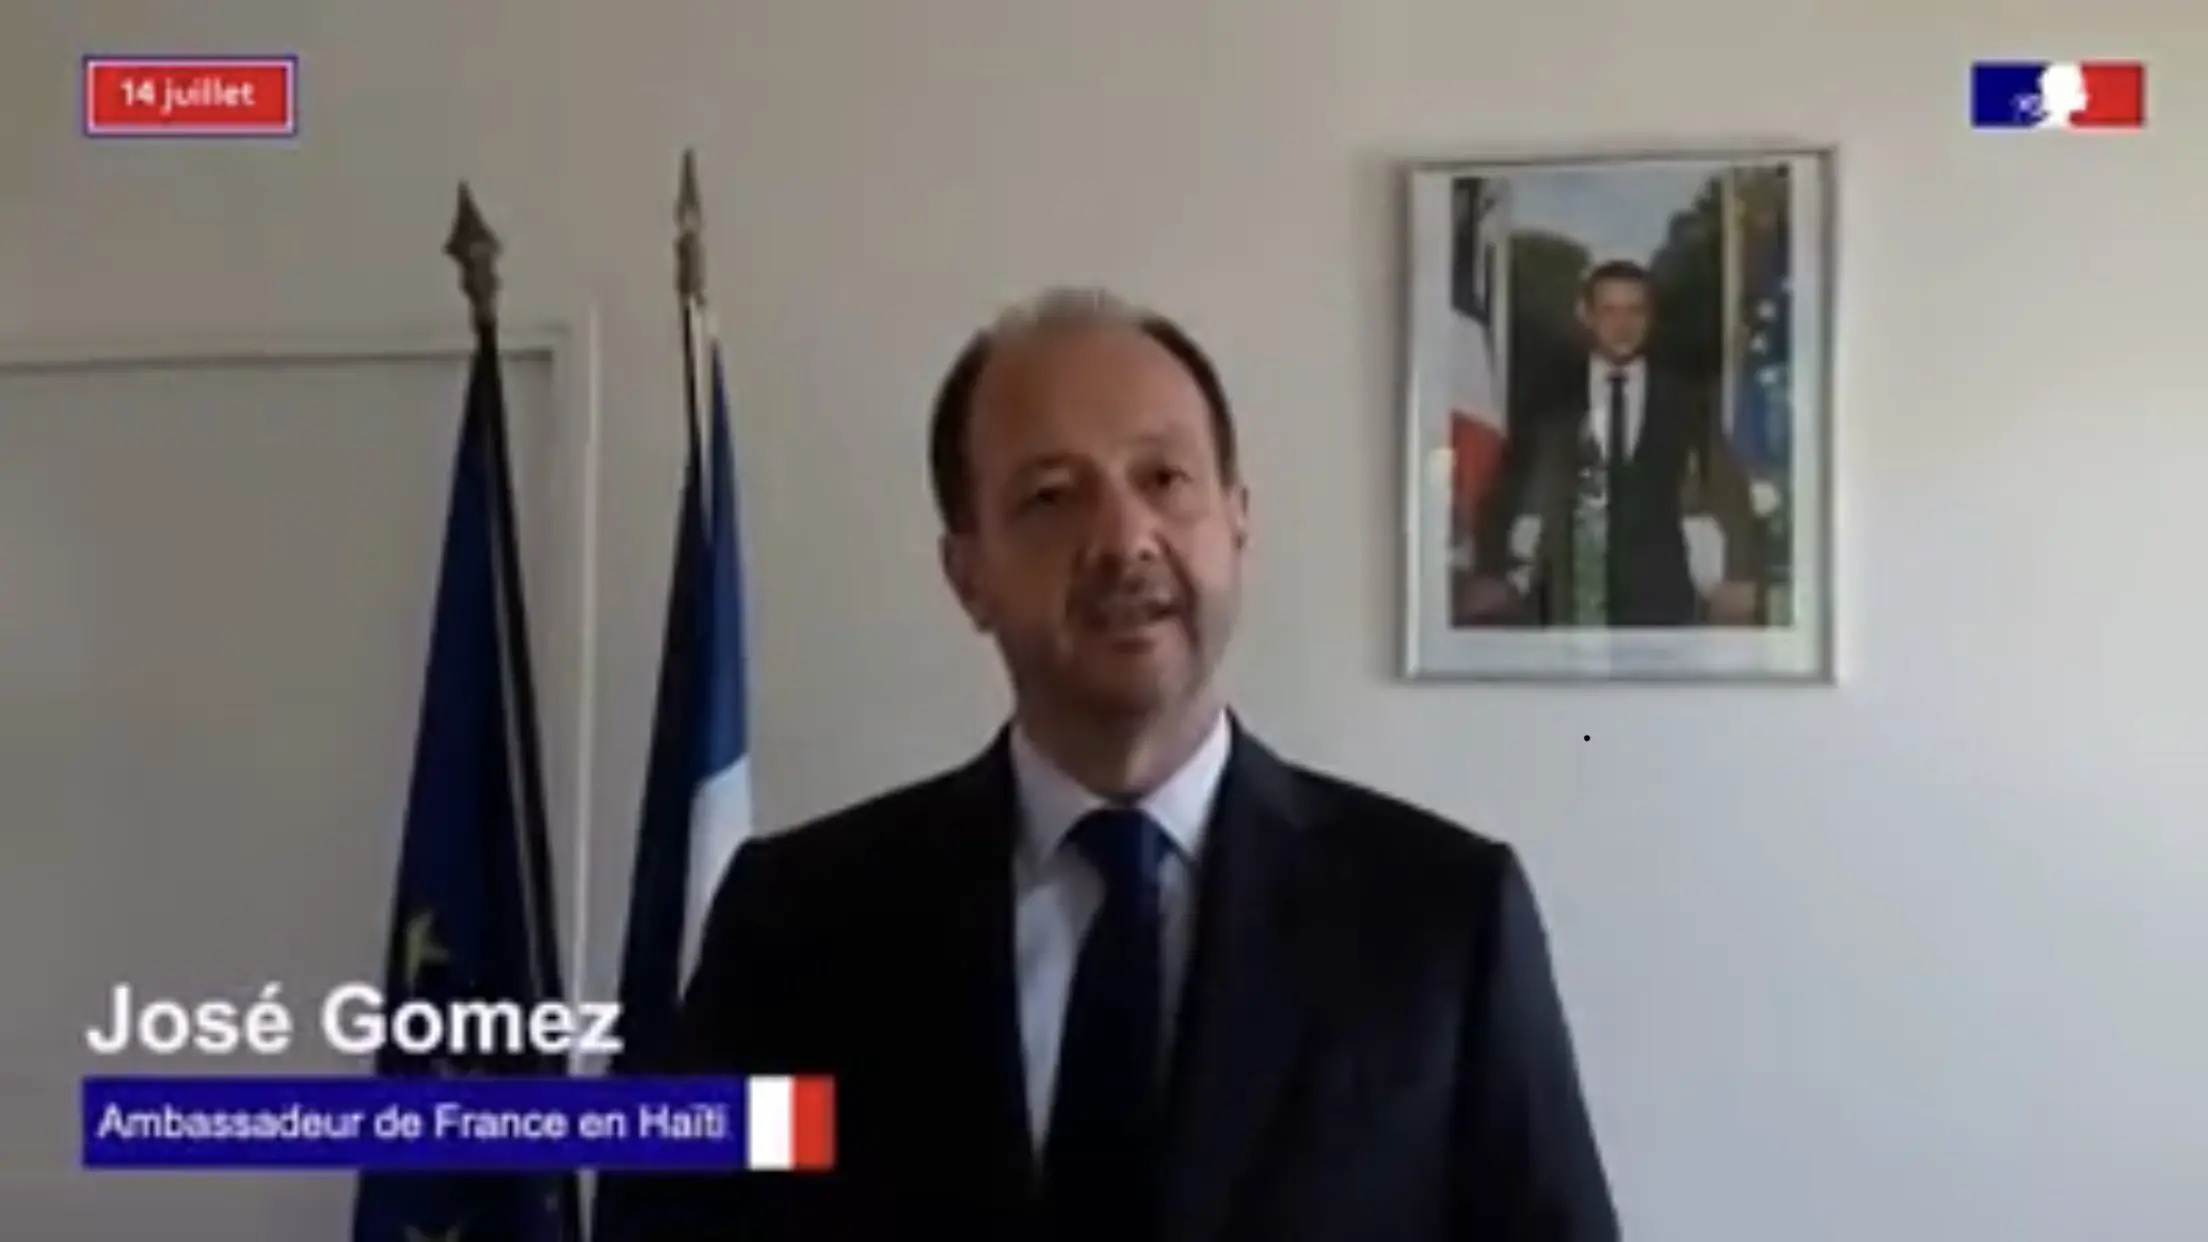 L'ambassadeur de France en Haïti déplore les violences dans les quartiers populaires